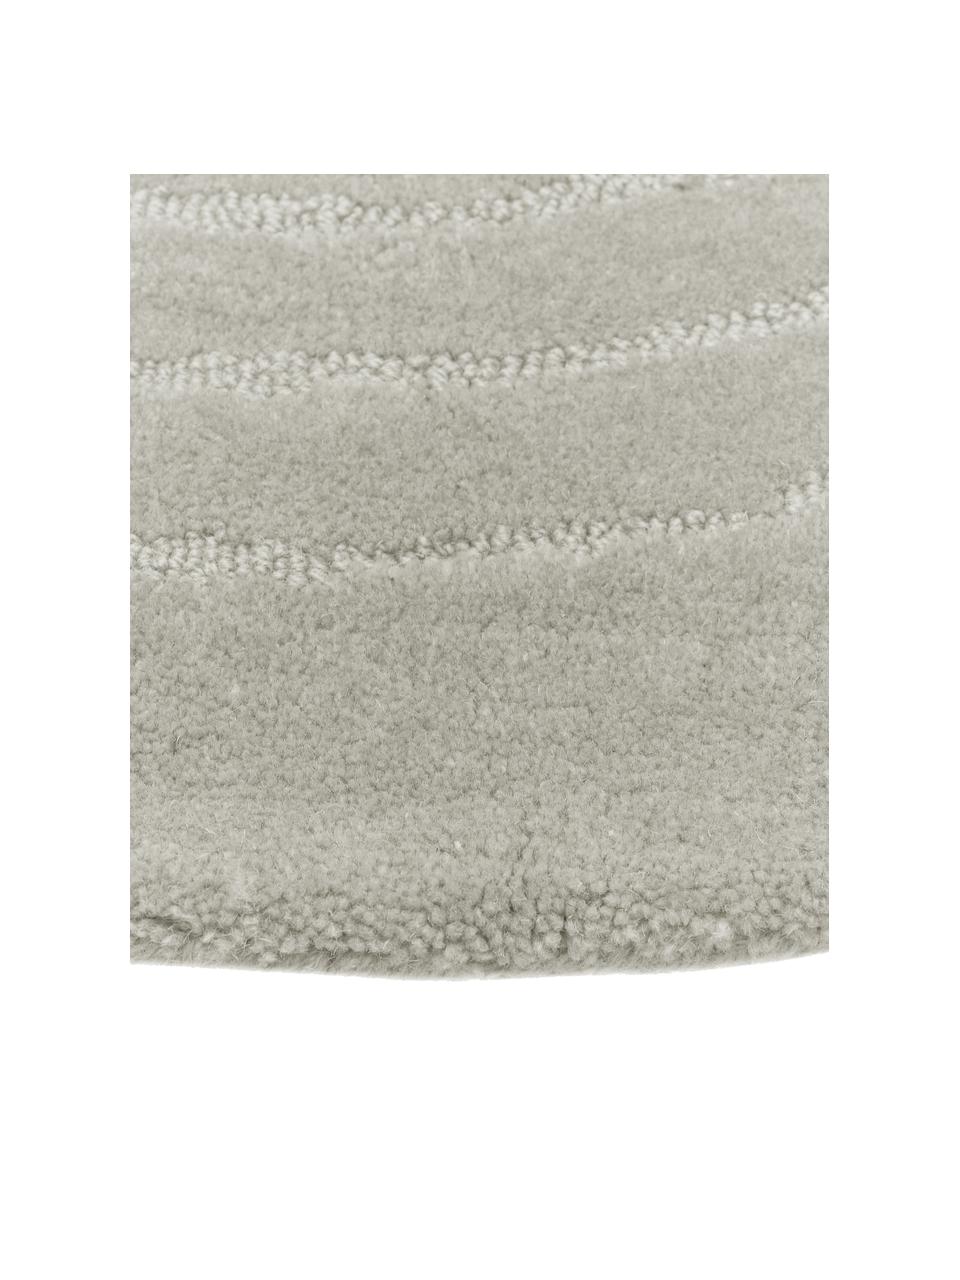 Runder Wollteppich Mason in Hellgrau, handgetuftet, Flor: 100 % Wolle, Hellgrau, Ø 120 cm (Größe S)